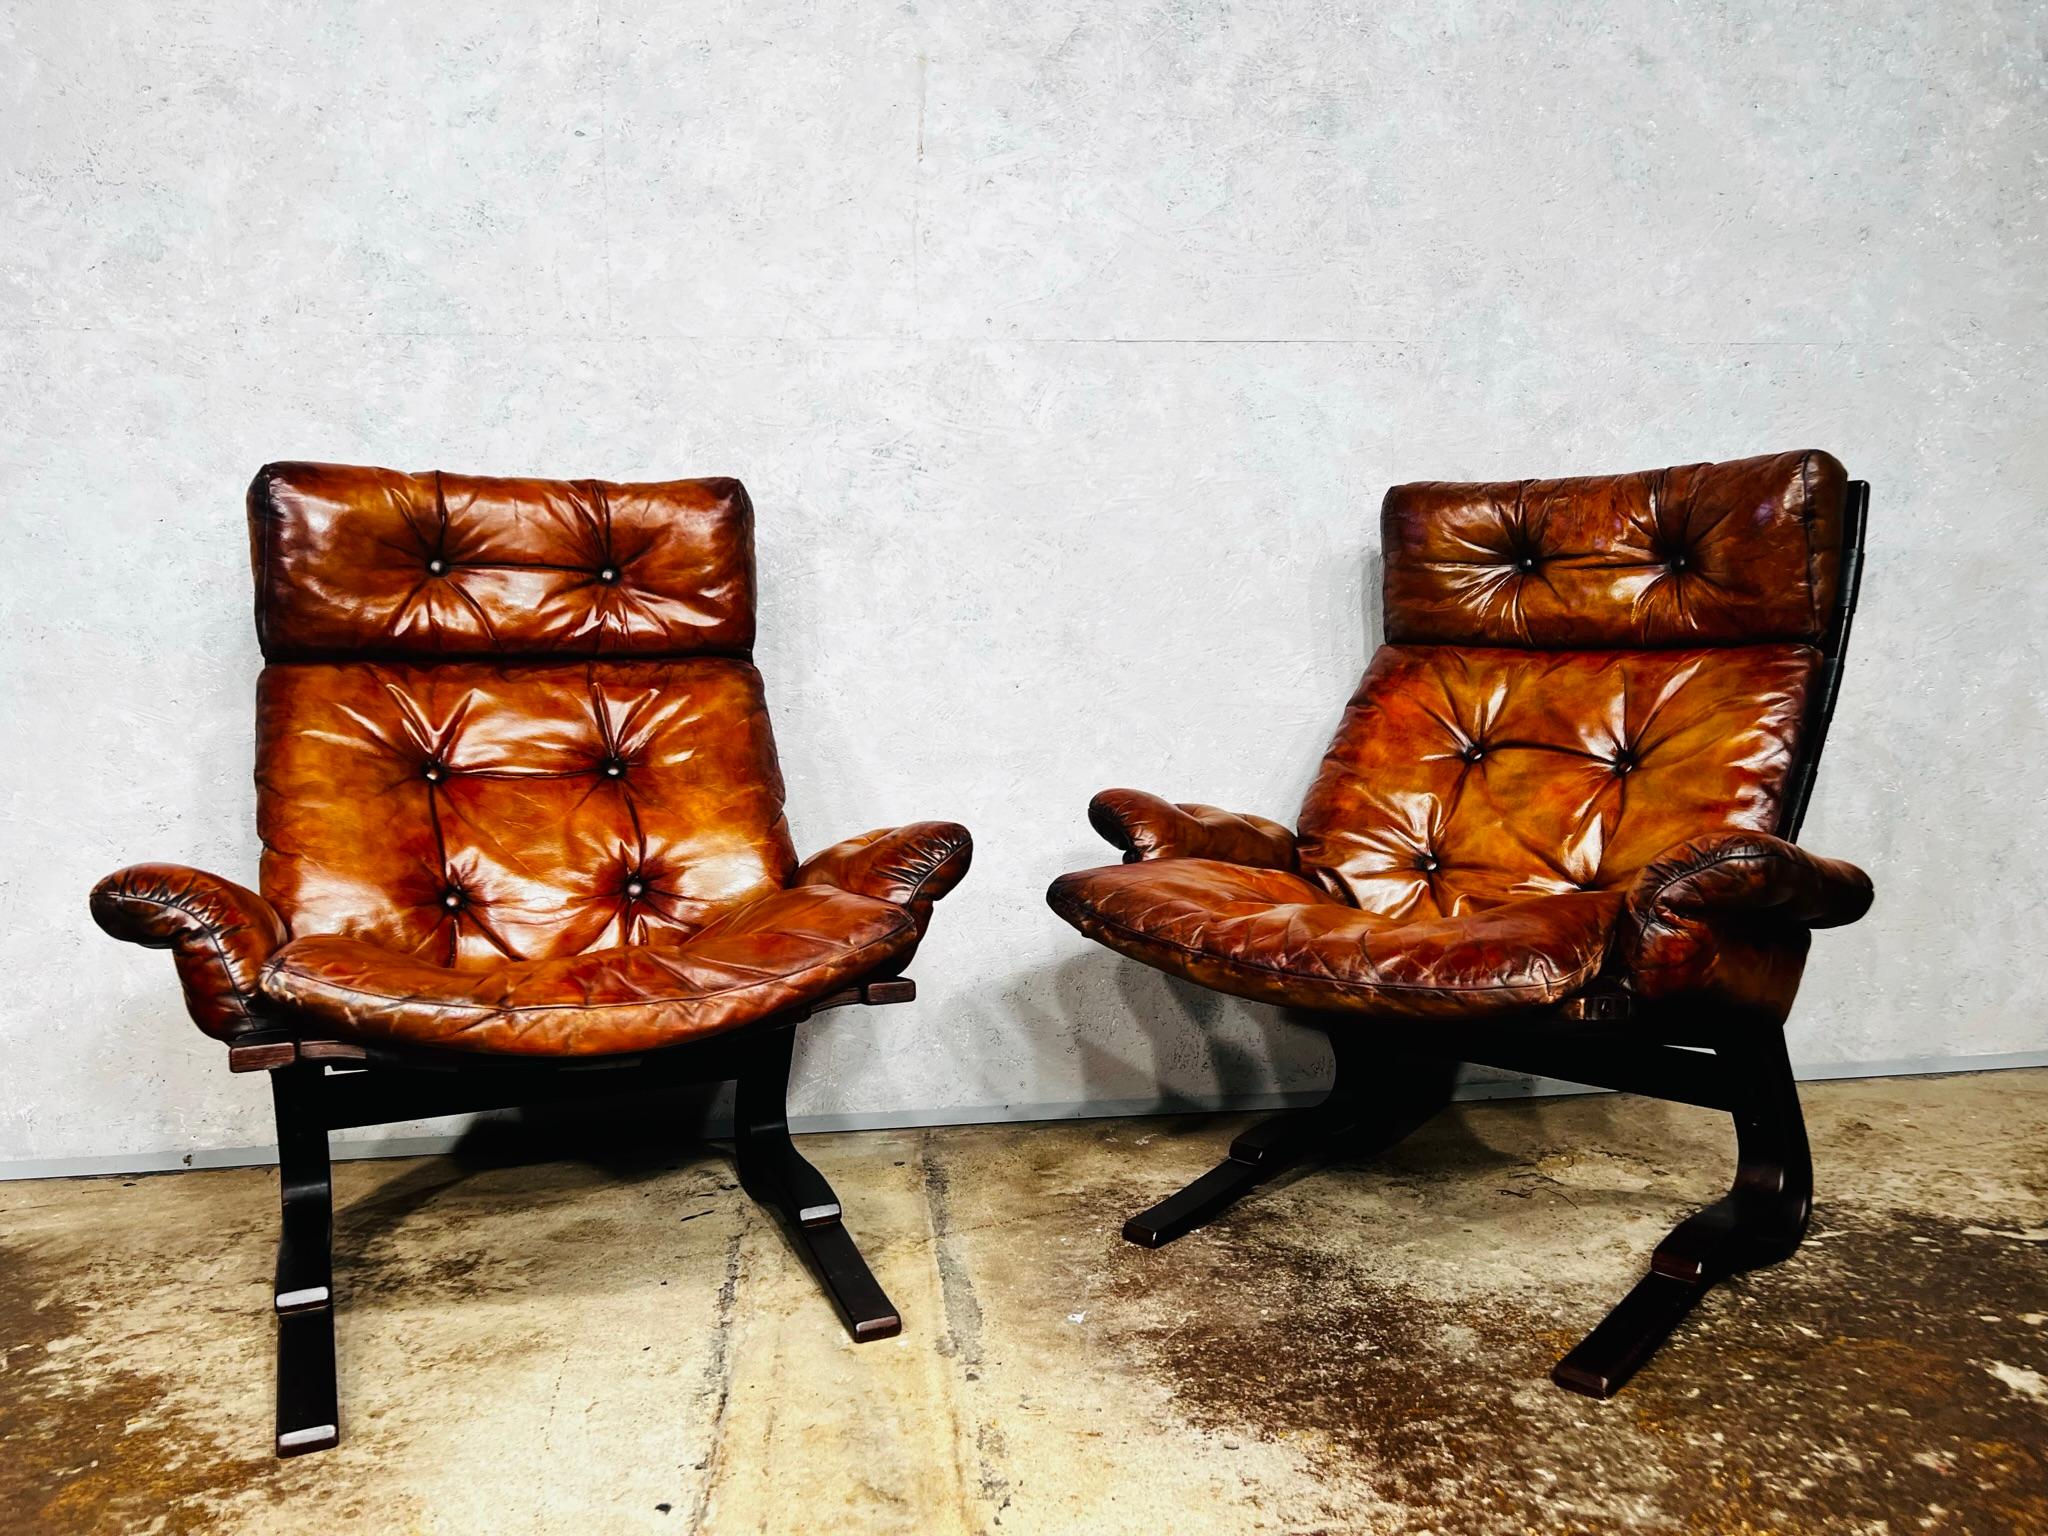 Une superbe paire de chaises Skyline conçue par le designer norvégien Einar Hove 1970

D'un design remarquable et d'une taille généreuse, ces chaises sont très confortables.

Le cuir est d'une belle couleur beige clair, teint à la main, il a une